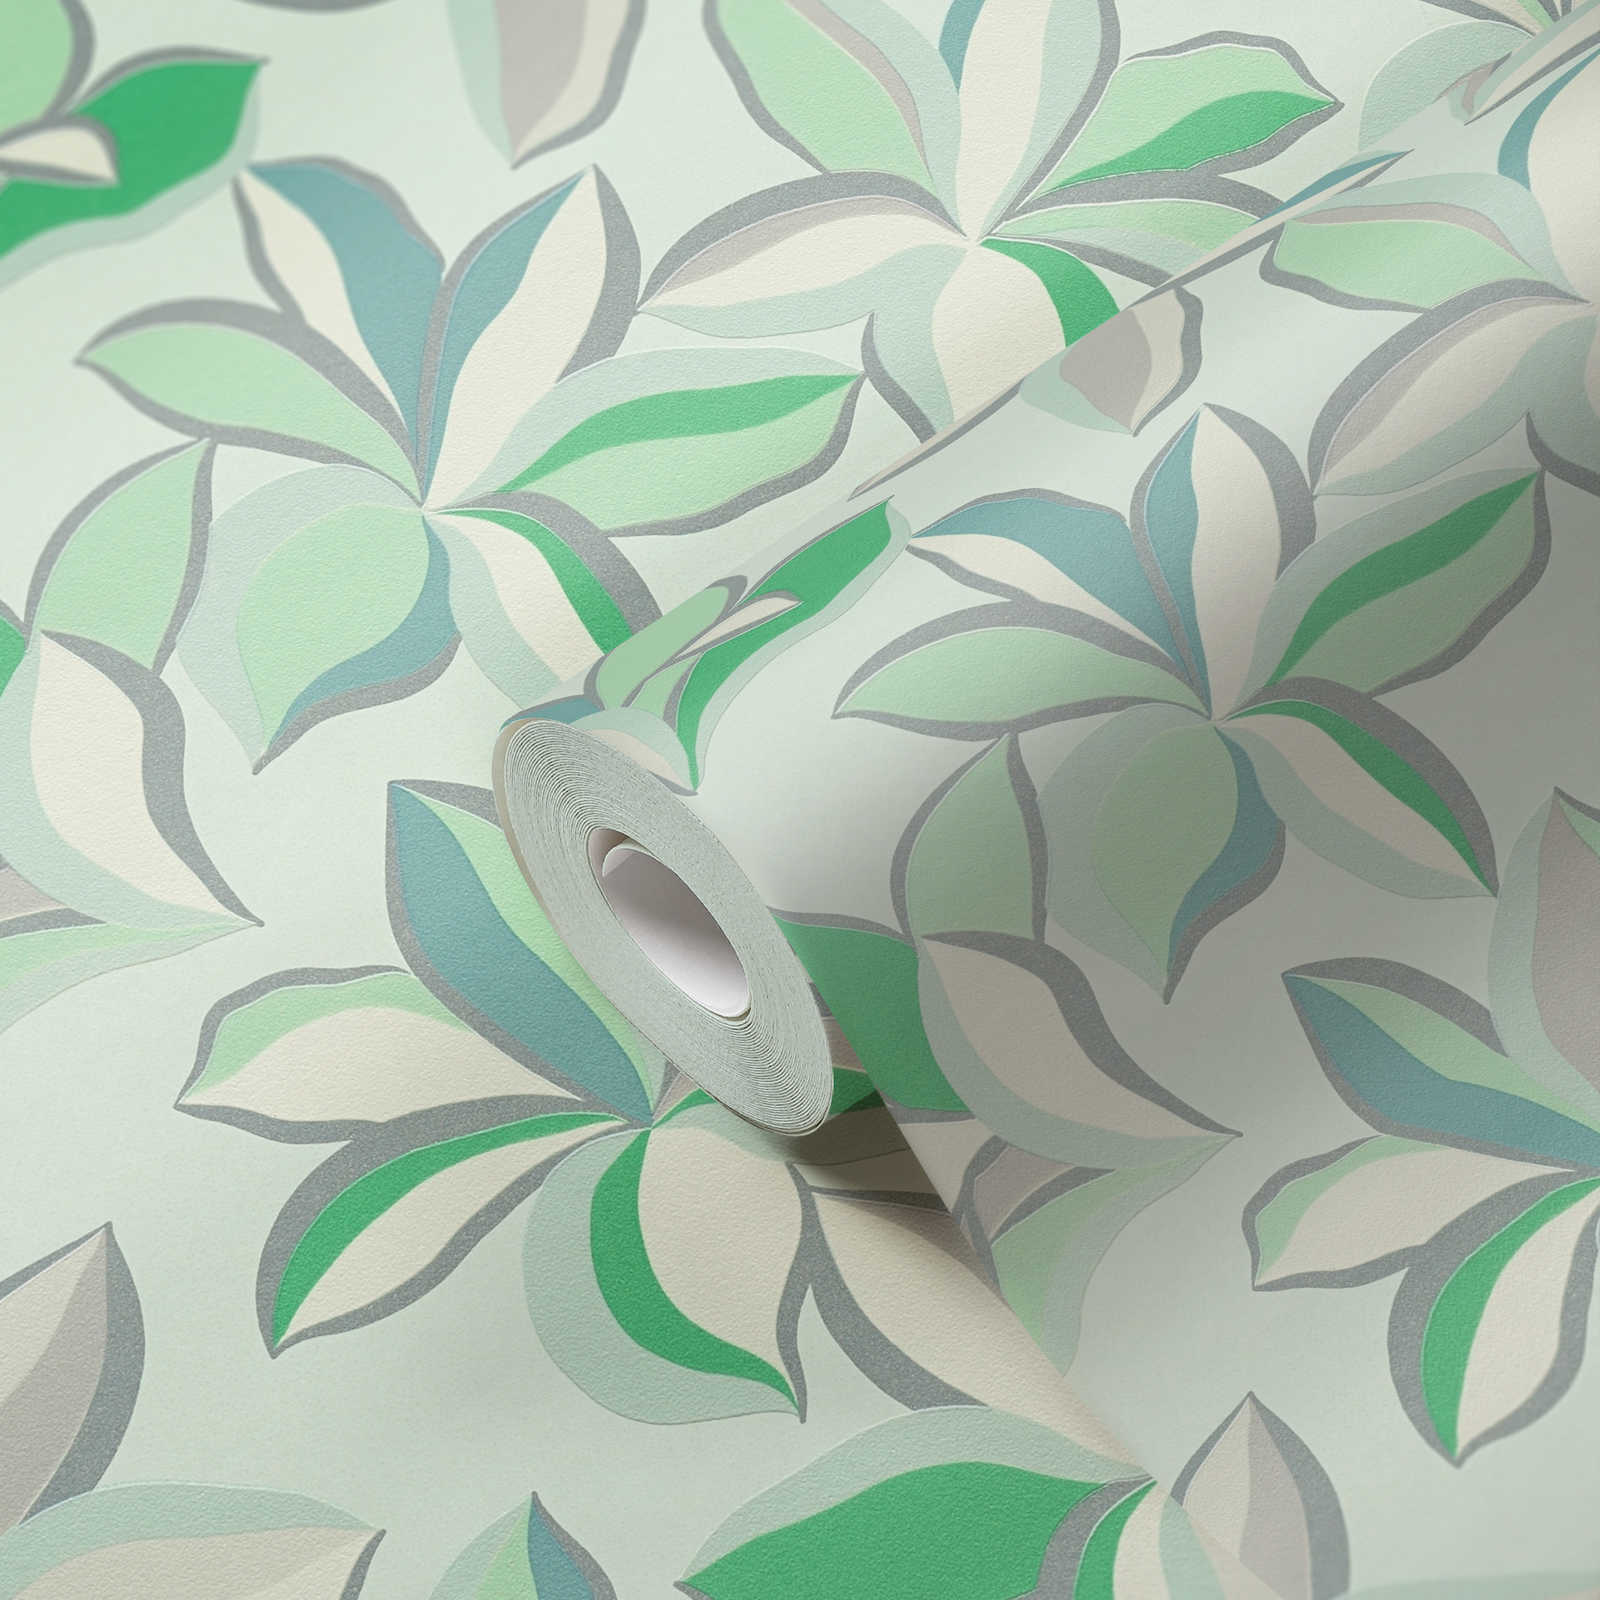             Papel pintado no tejido floral con estructura brillante - verde, gris
        